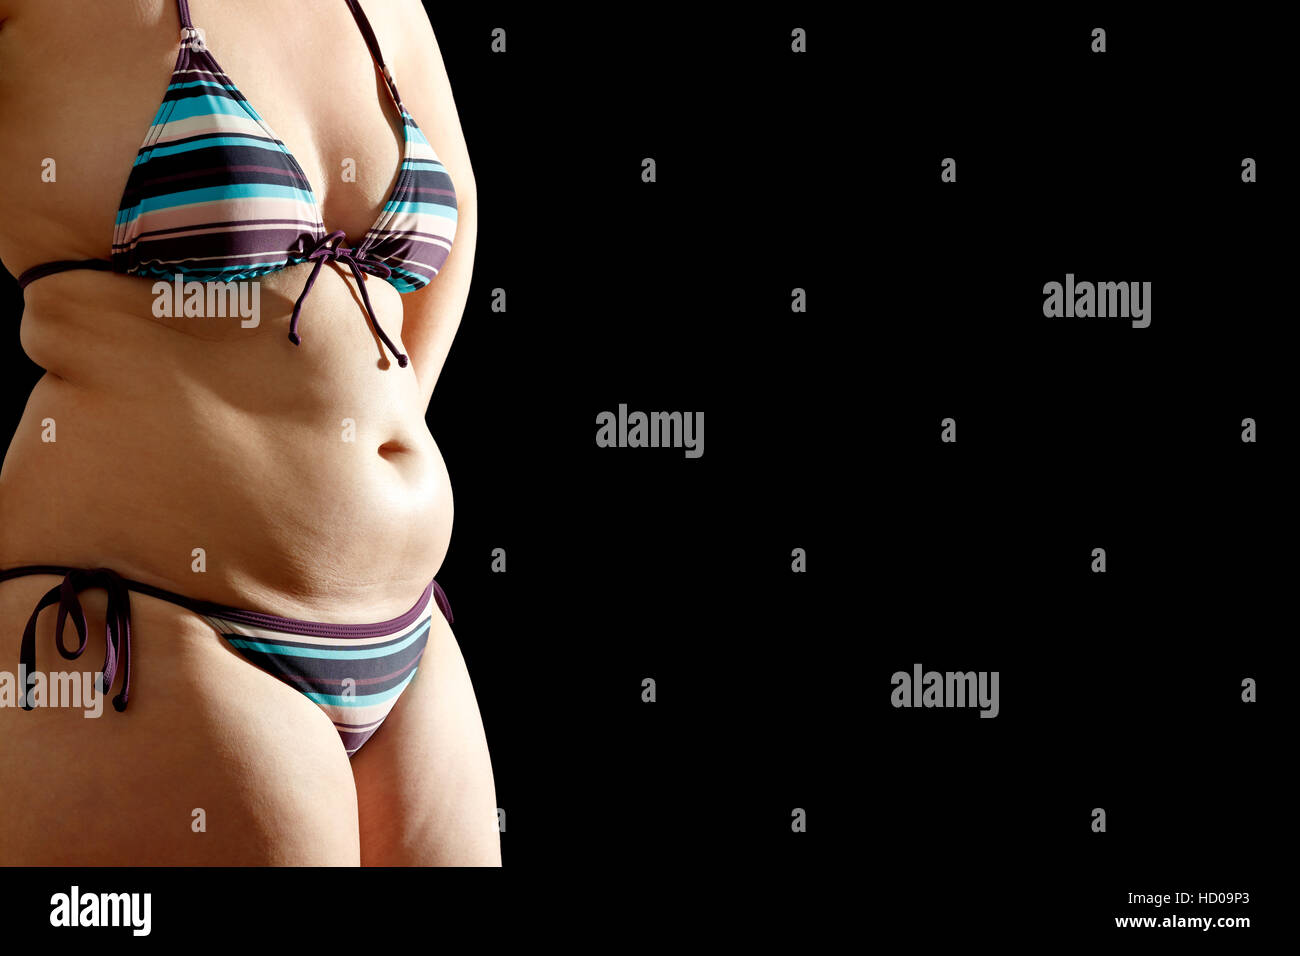 Corps de femme en bikini avec de gros rouleaux sur la taille et le ventre sur fond noir, texte ou copy space Banque D'Images